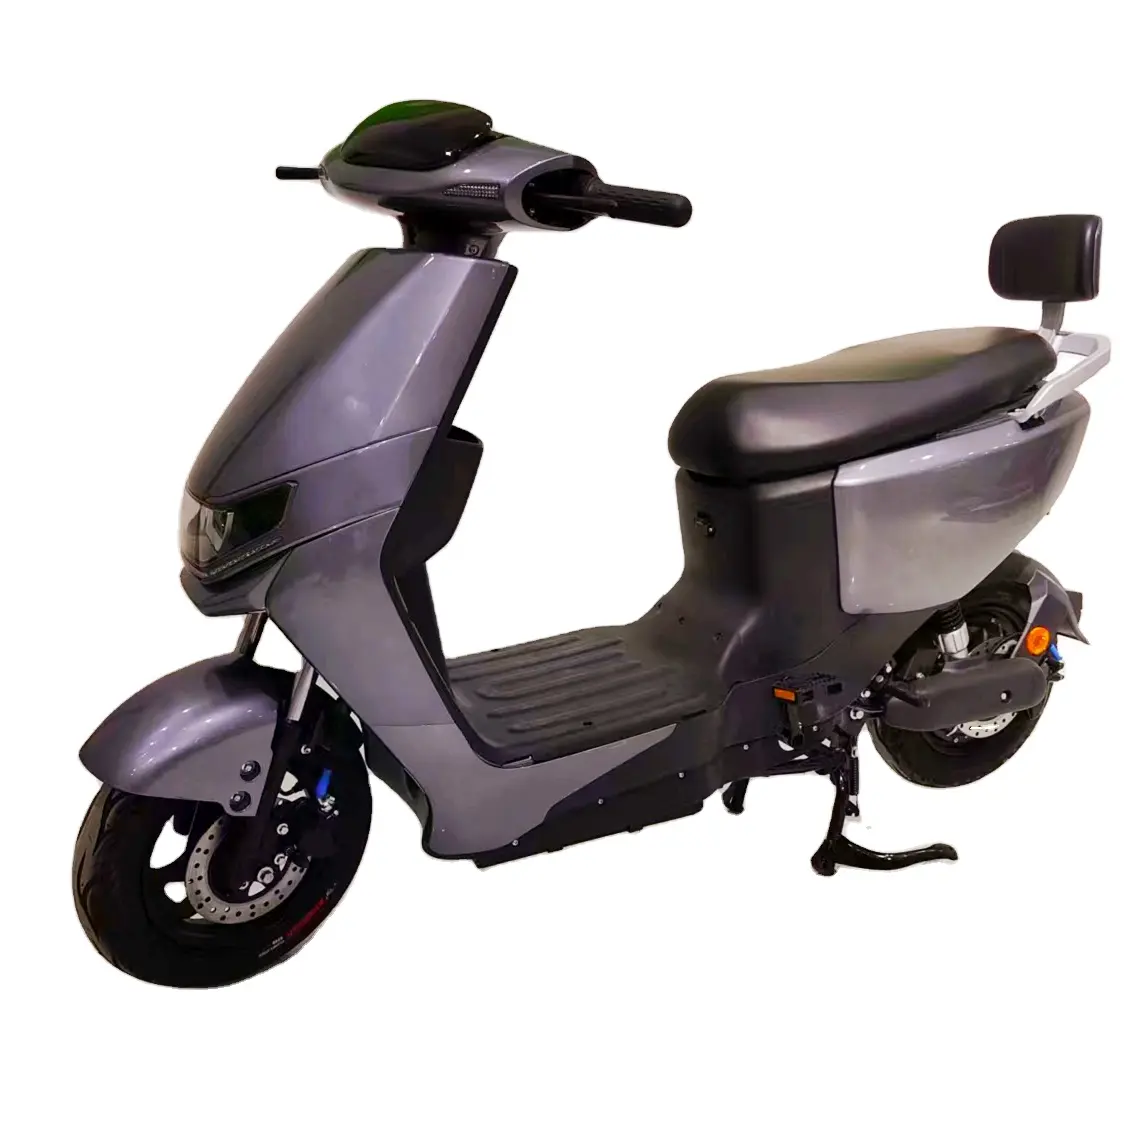 Venta caliente de alta calidad Scooter Eléctrico motocicletas baratas ciclomotor con pedales bicicletas eléctricas para adultos